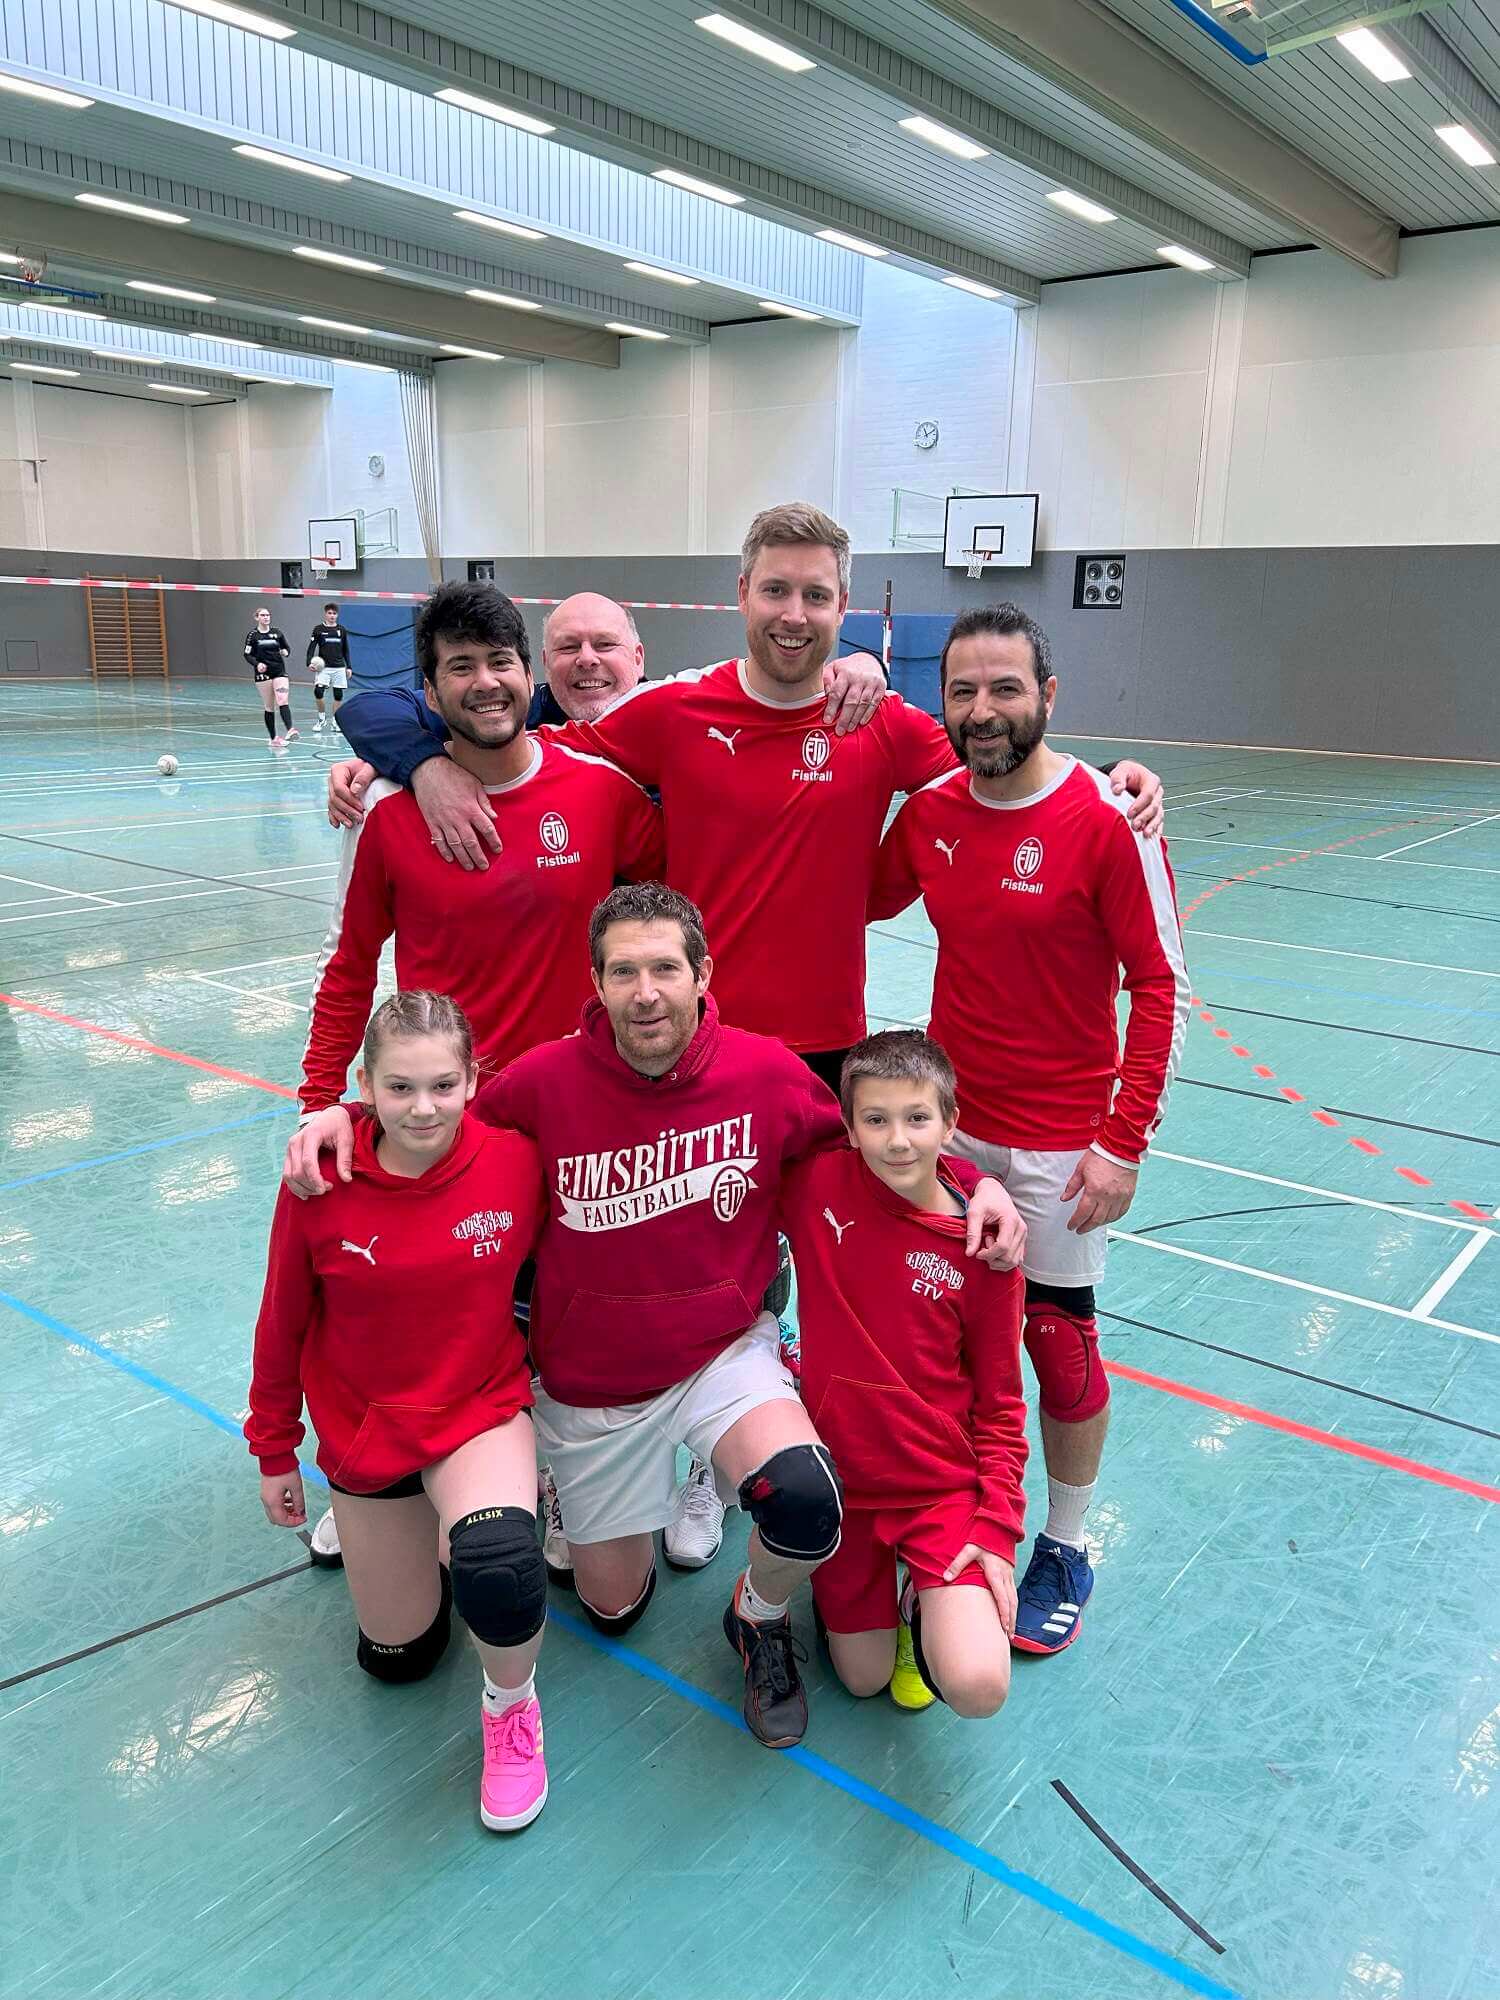 Ein Mannschaftsfoto der Faustballmannschaft des GFSV Hamburg, bestehend aus 5 Männern und zwei jugendlichem, ein Mädchen und ein Junge. Alle tragen ein rot-weißes Trikot, einer ein schwarzes Sportoutfit.